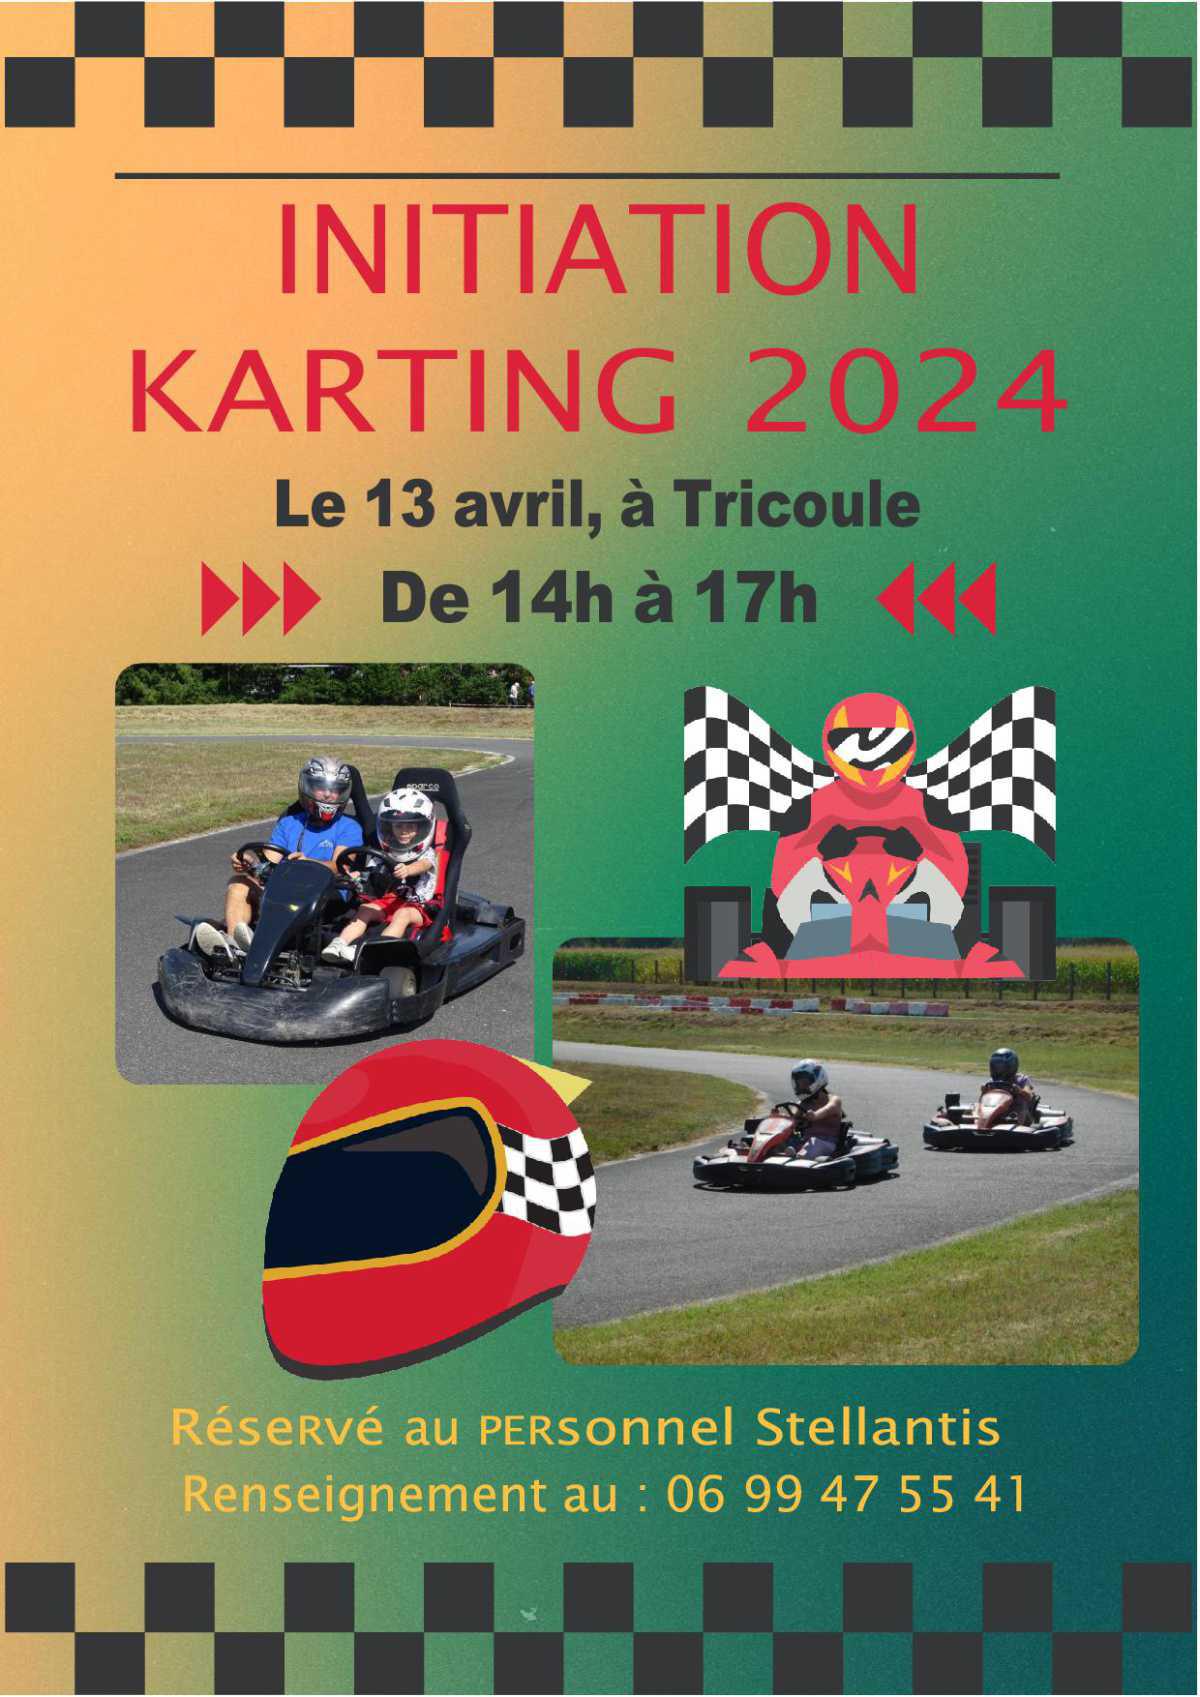 La section Karting vous attend le samedi 13 Avril à Tricoule, venez nombreux👍 